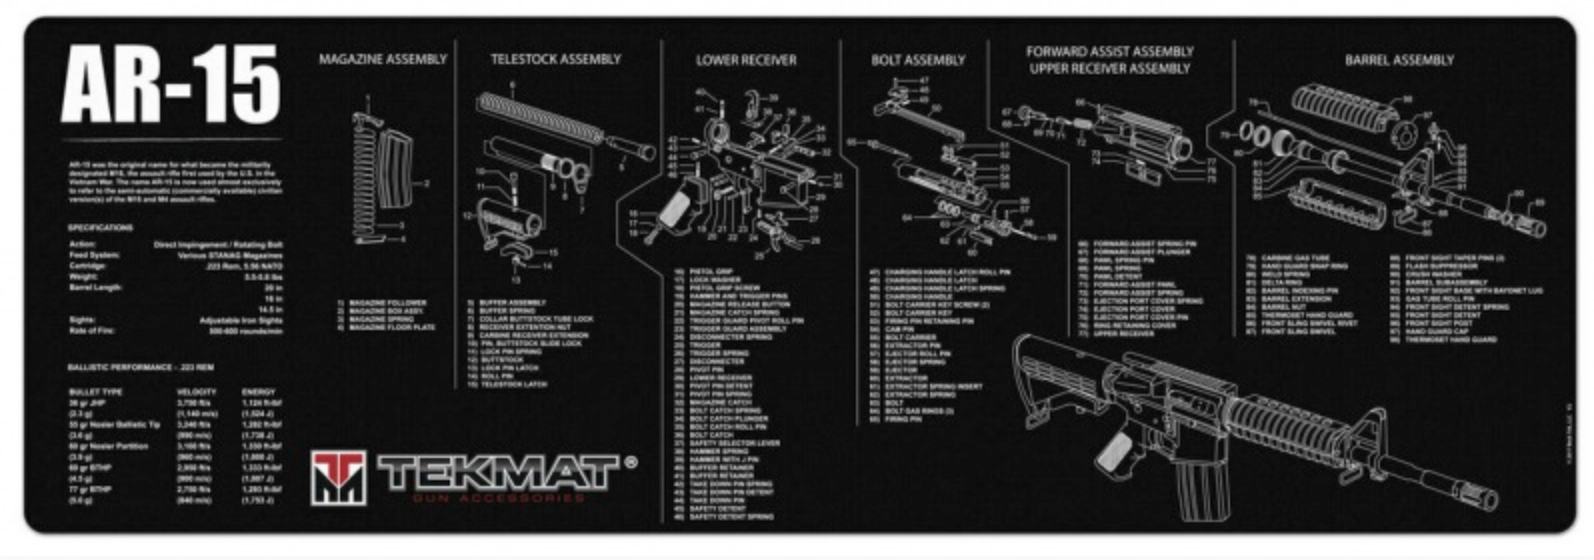 TekMat - AR-15 - Cleaning Bench Mat